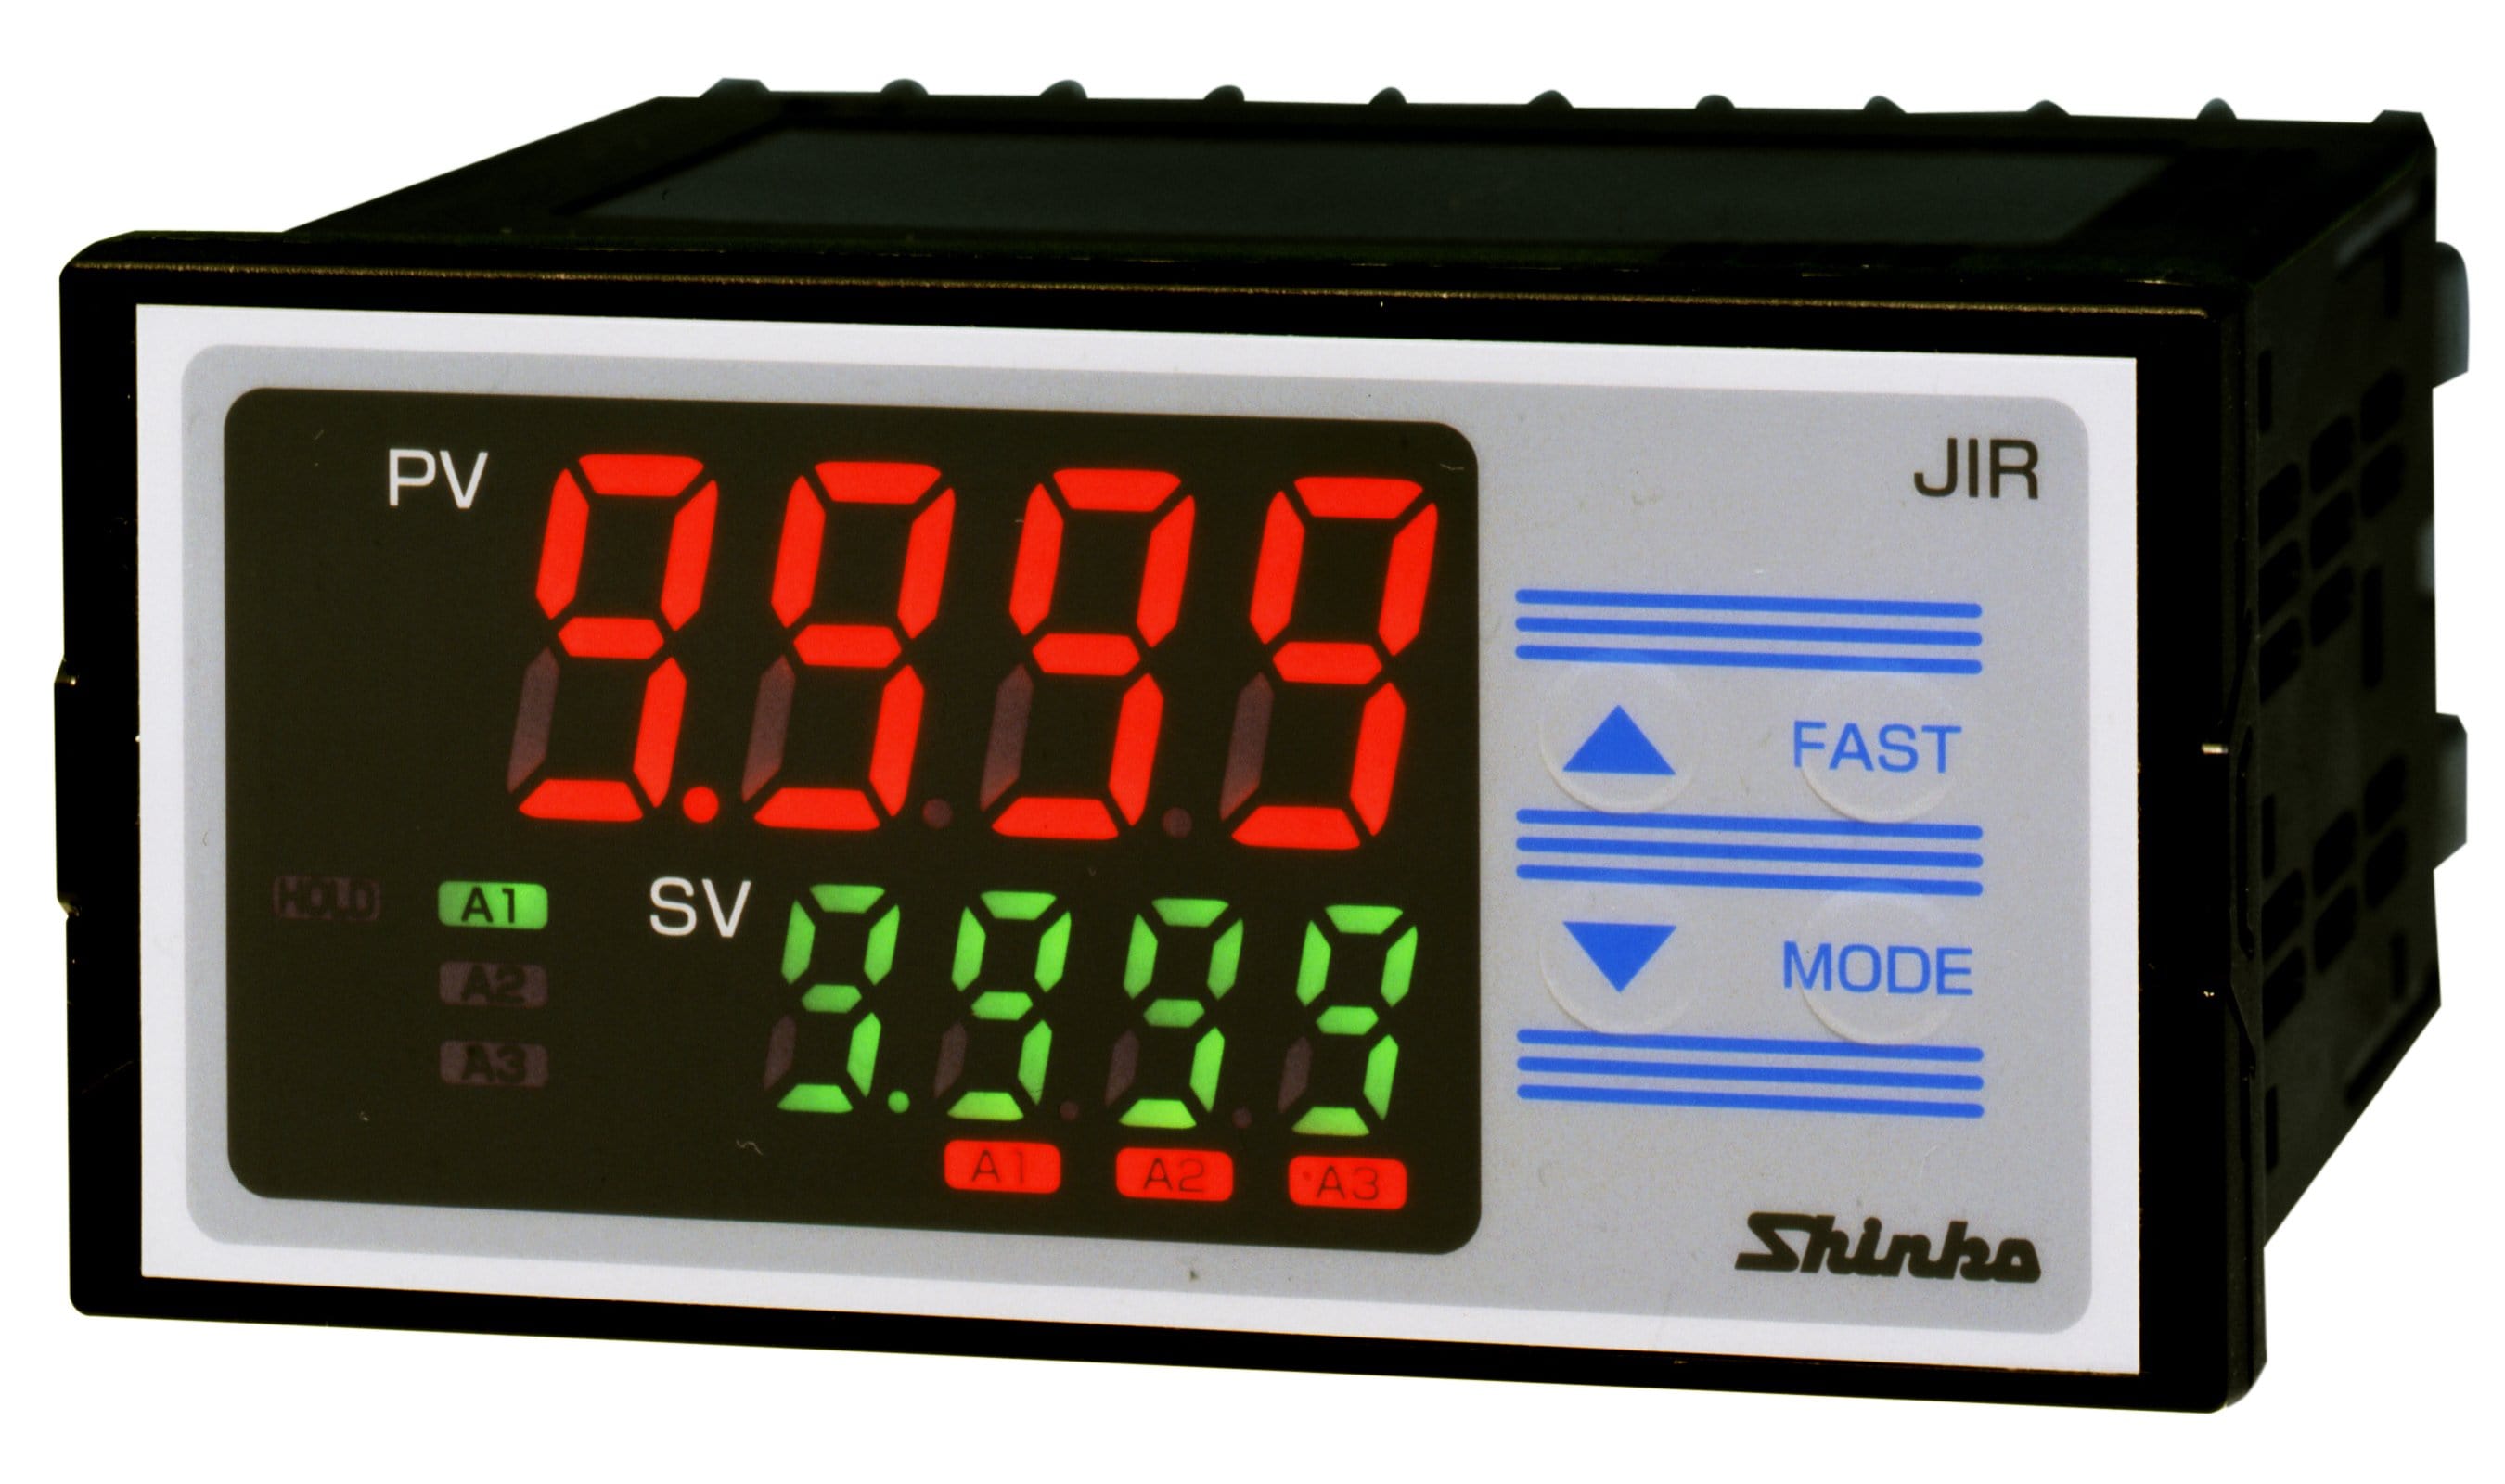 Digital Current Meter, Voltage Meter, or Process Meters